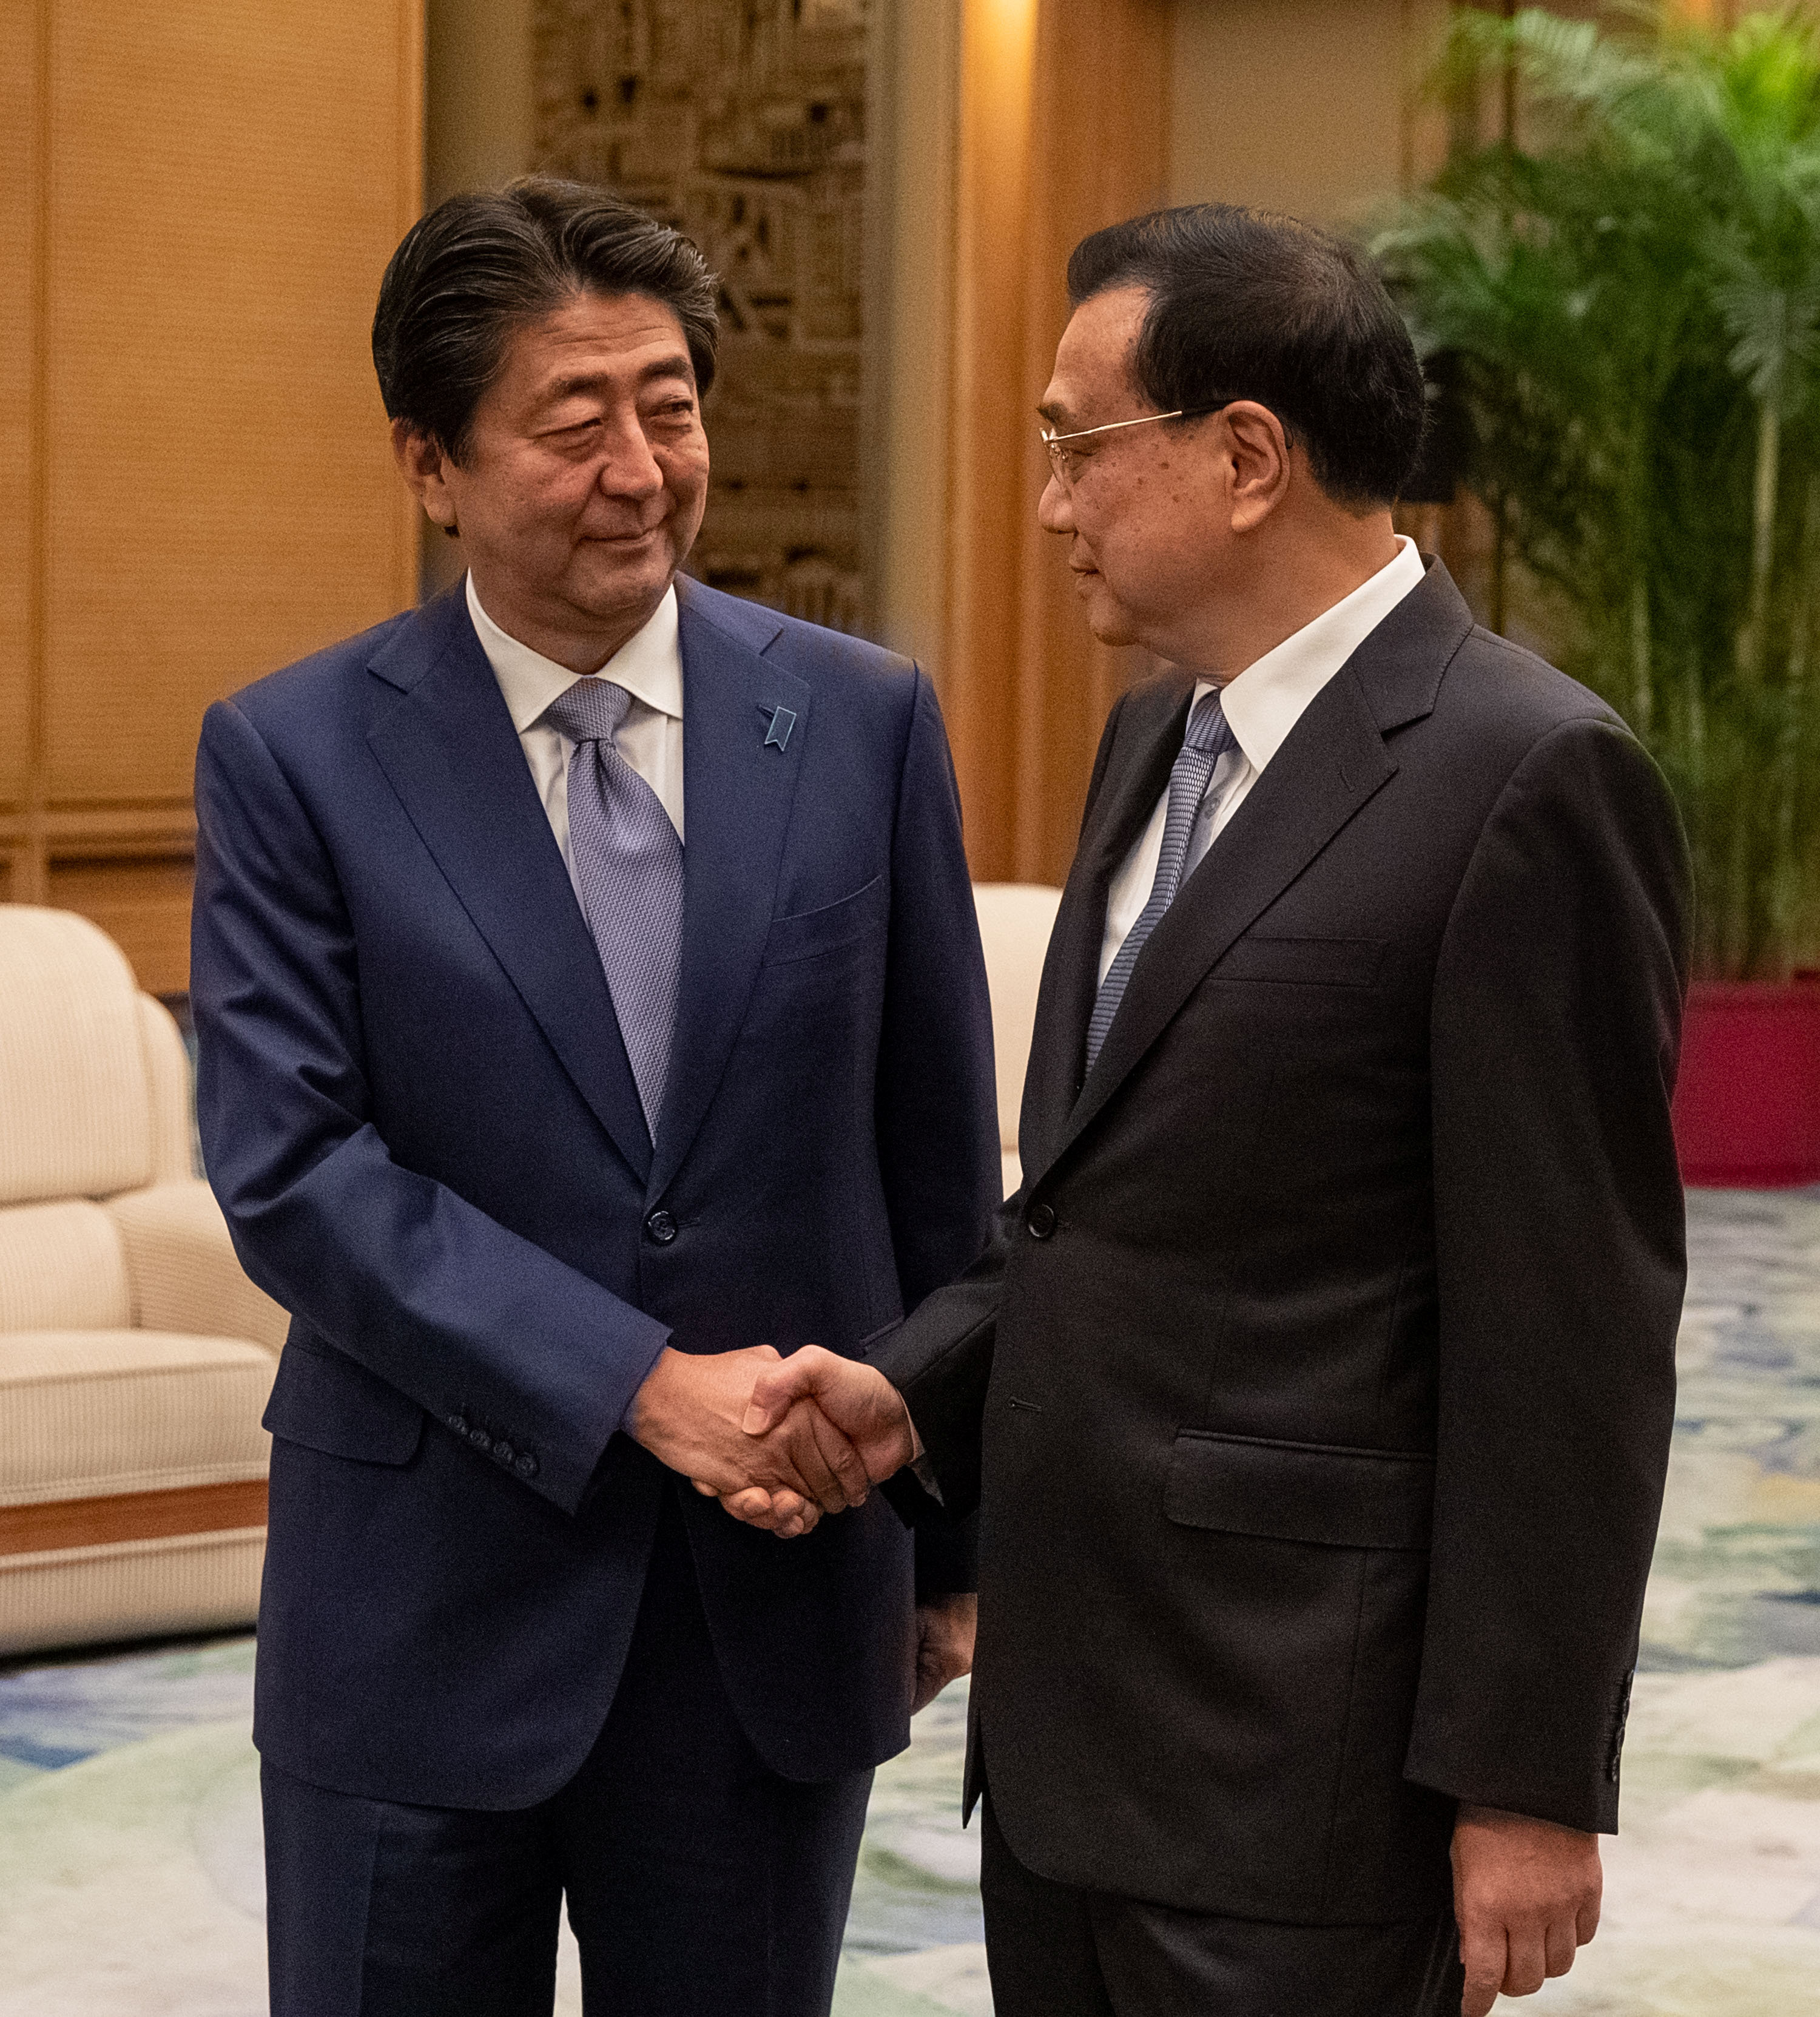 رئيس وزراء اليابان يزور بكين للمرة الأولى منذ 2011